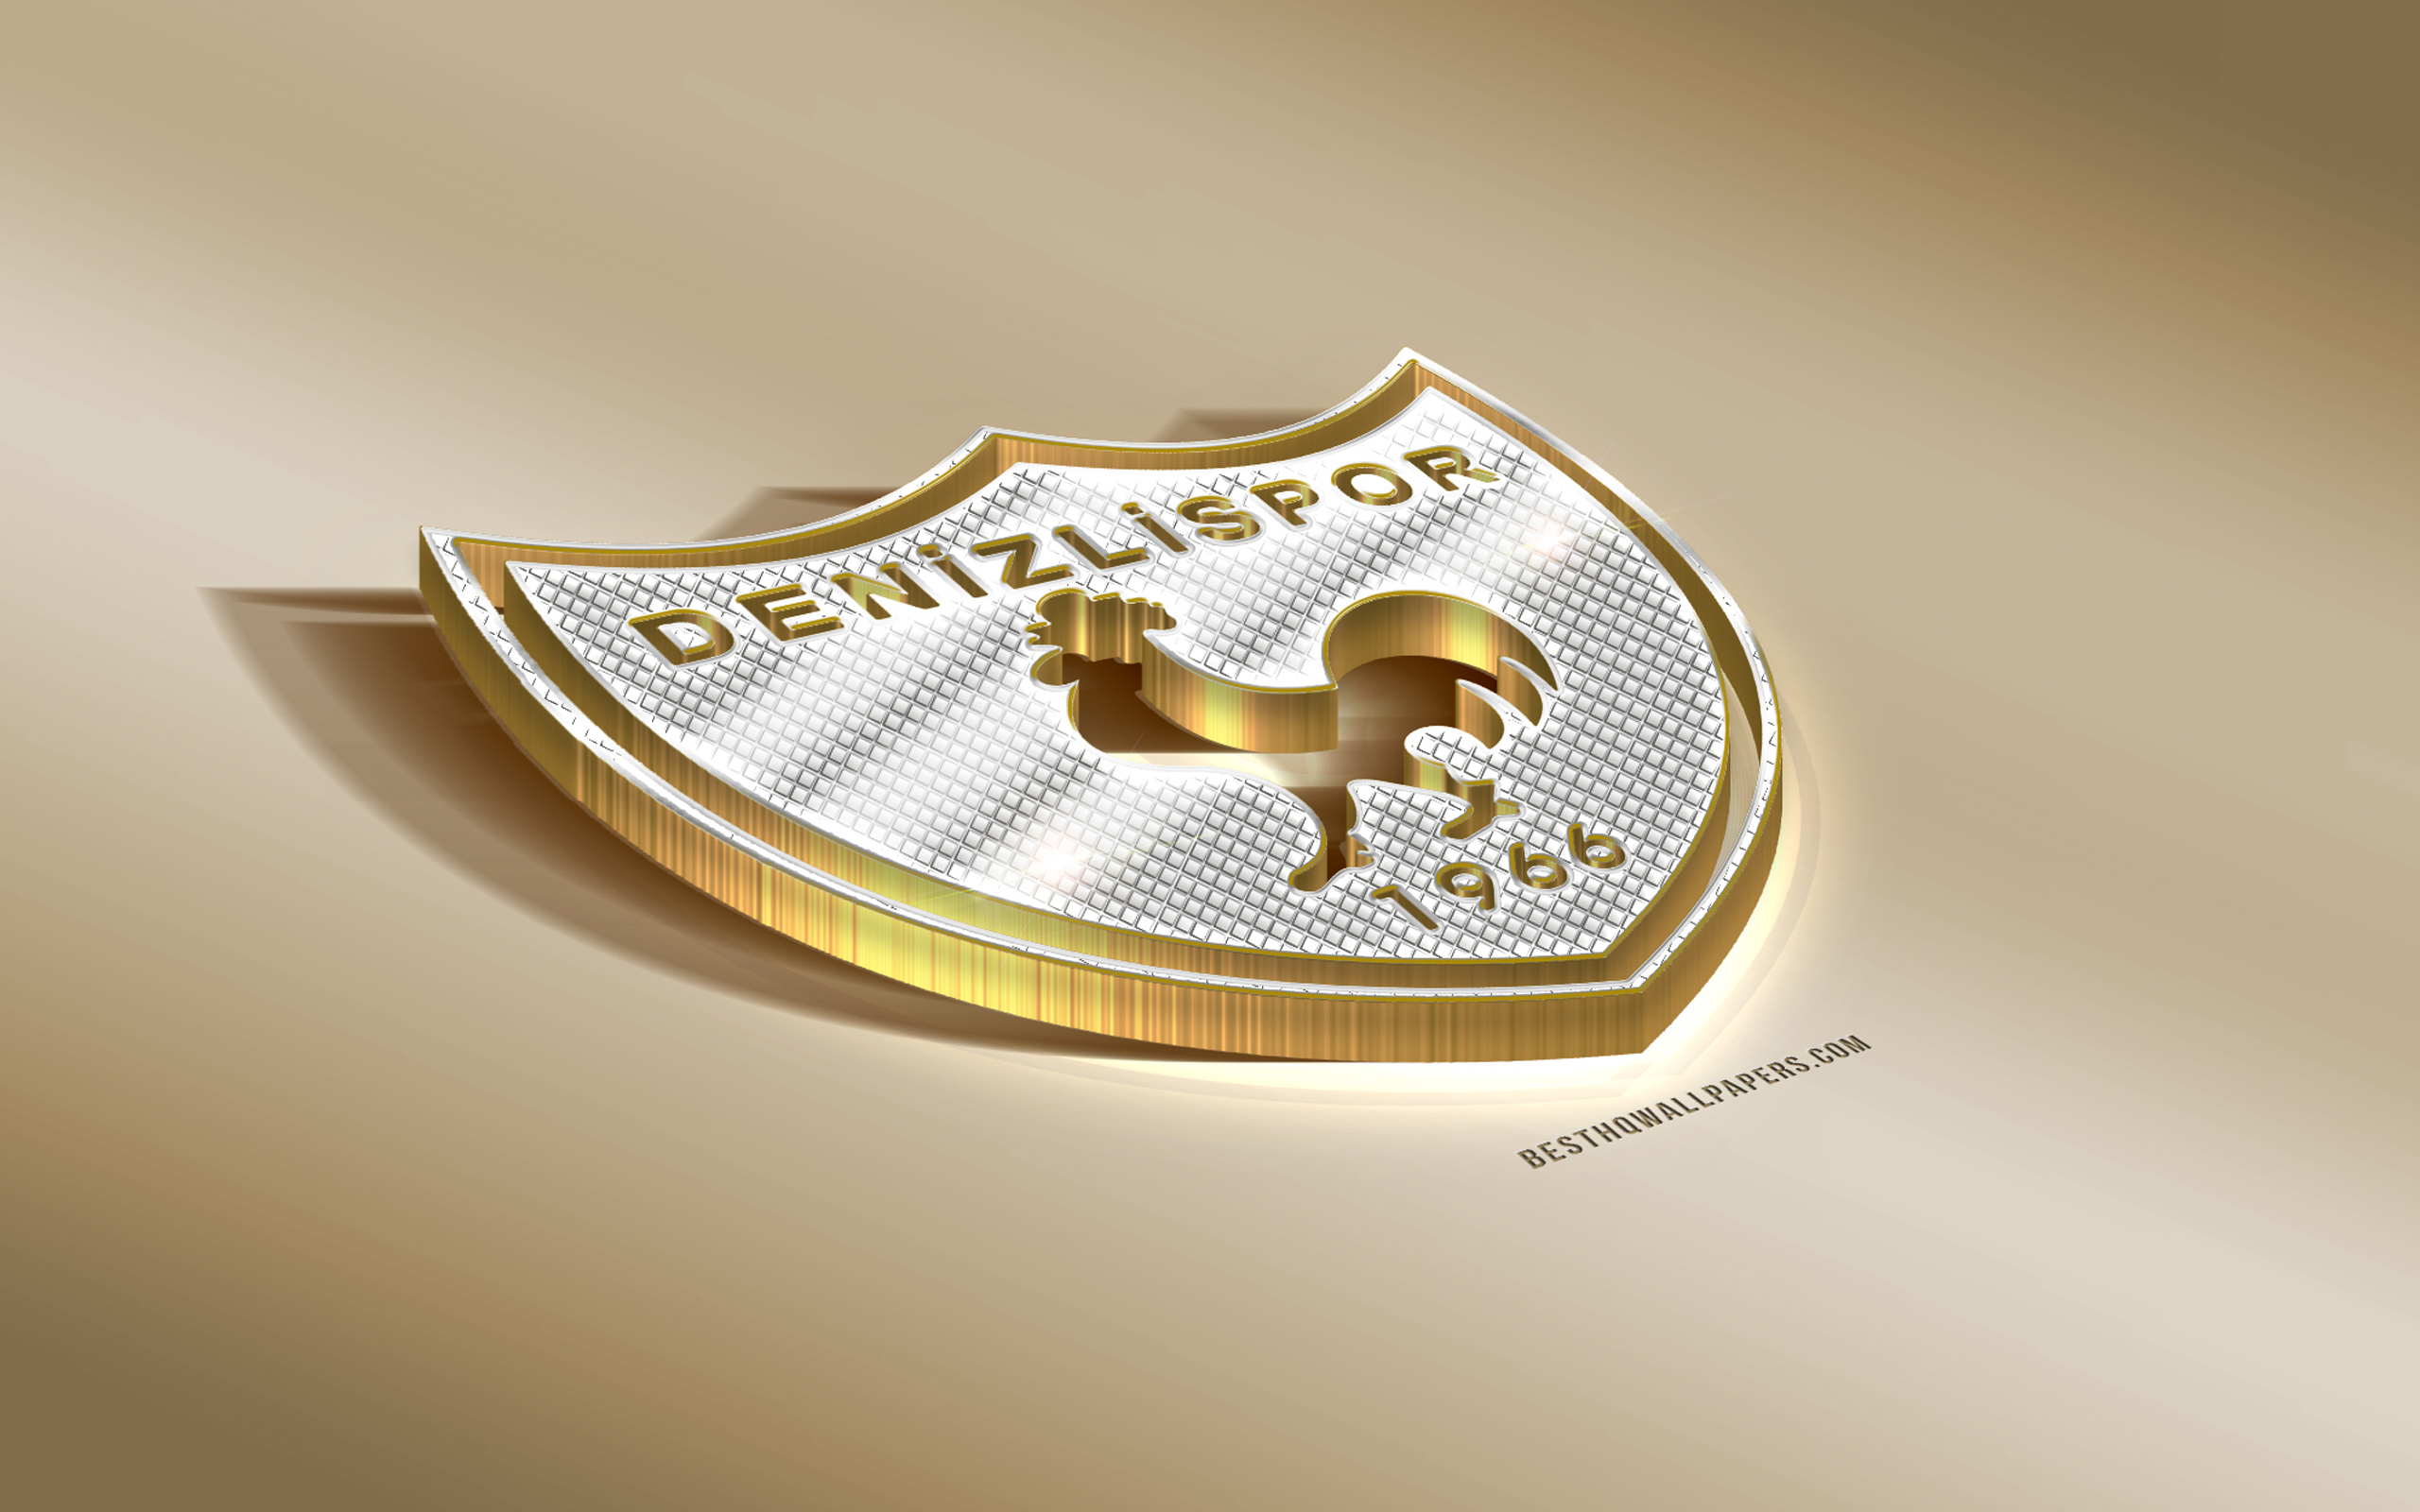 Download wallpaper Denizlispor, Turkish football club, golden silver logo, Denizli, Turkey, TFF First League, PTT 1 Lig, 3D golden emblem, creative 3D art, football for desktop with resolution 2560x1600. High Quality HD